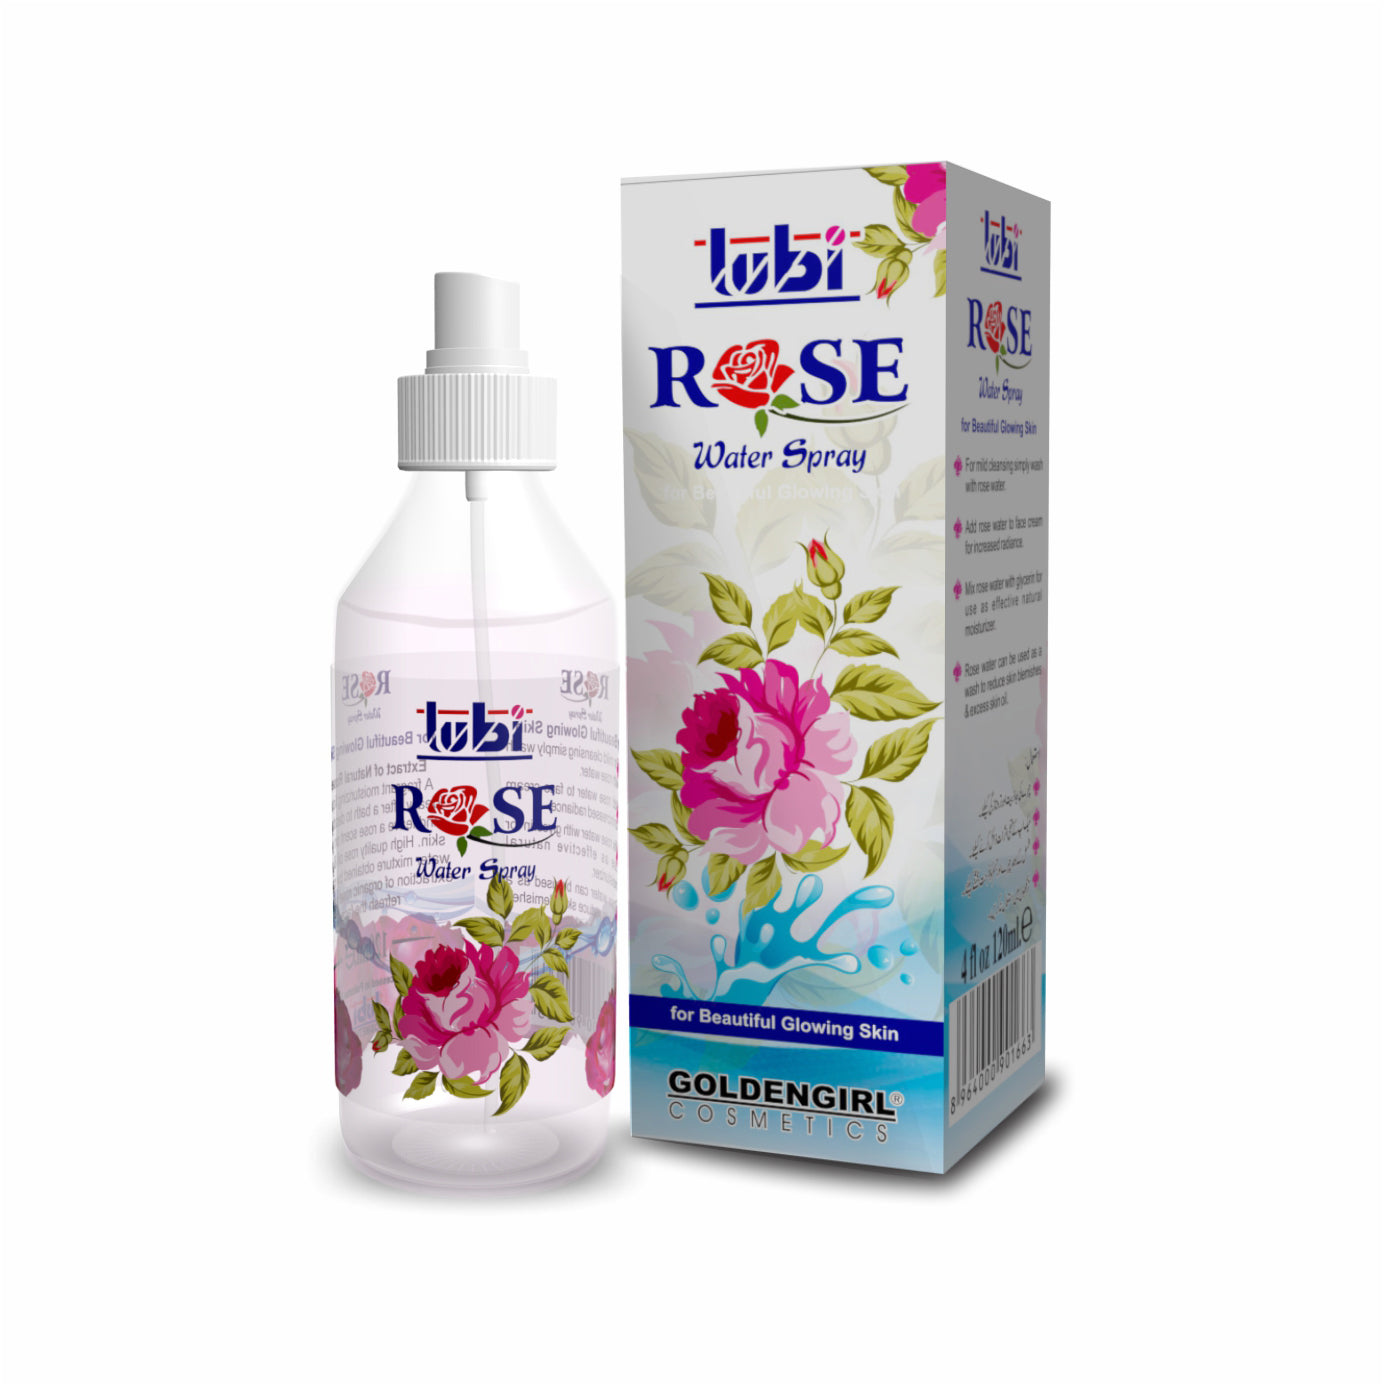 Lubi Rose Water